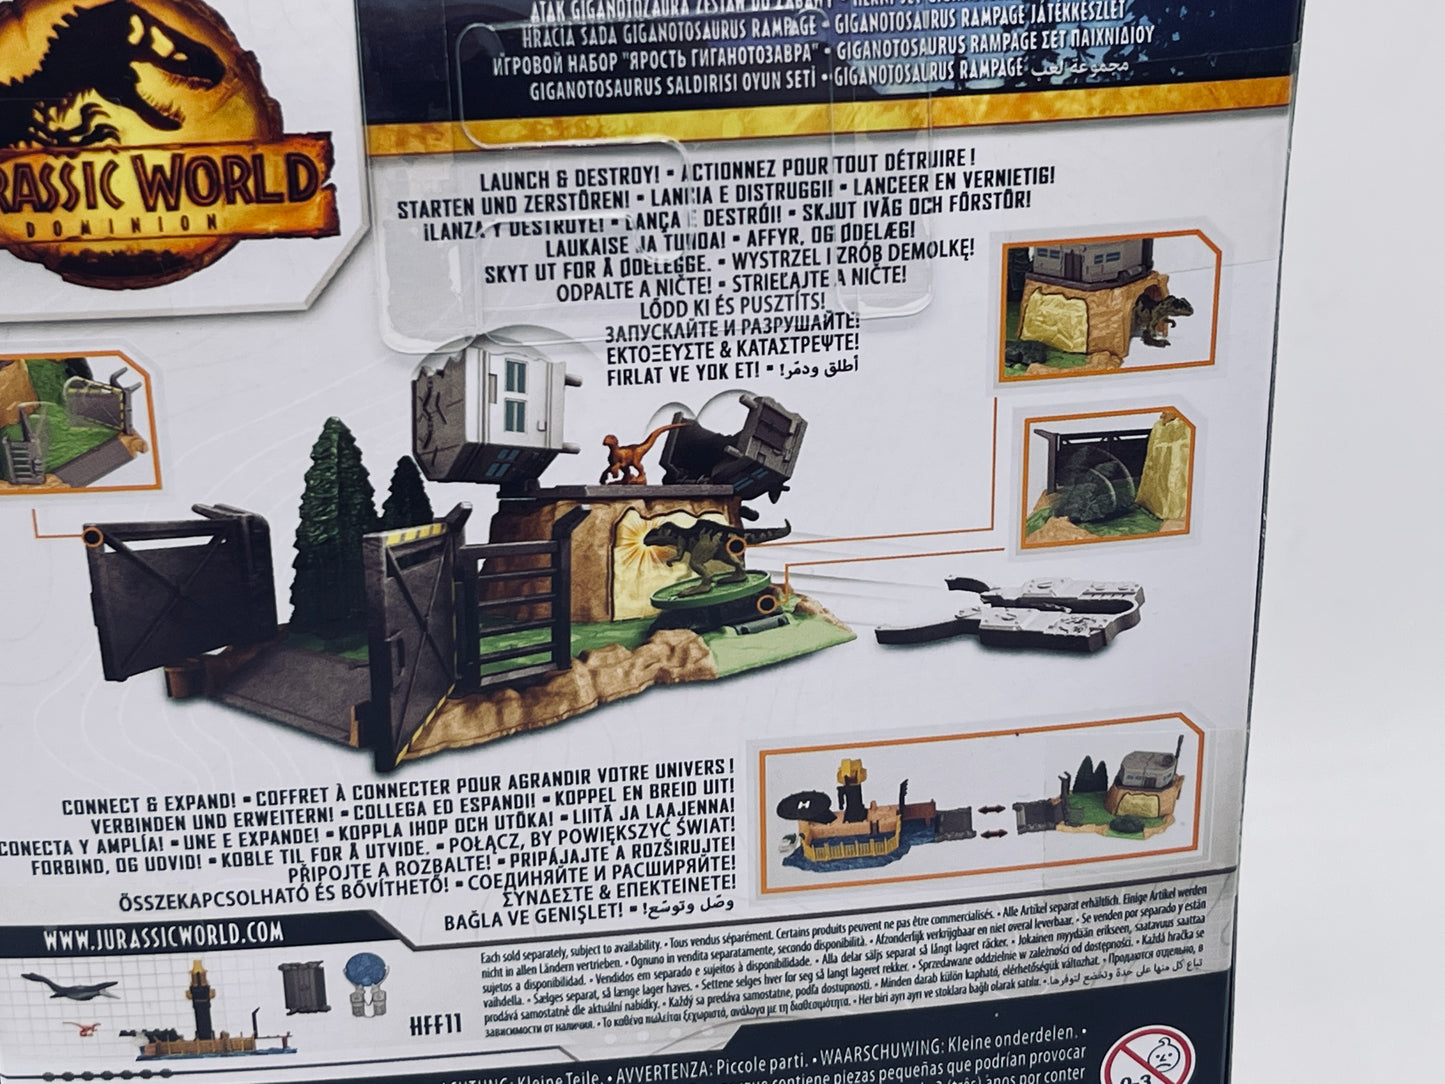 Jurassic World Dominion Minis Giganotosaurus Spielset Launch & Destroy (Mattel)